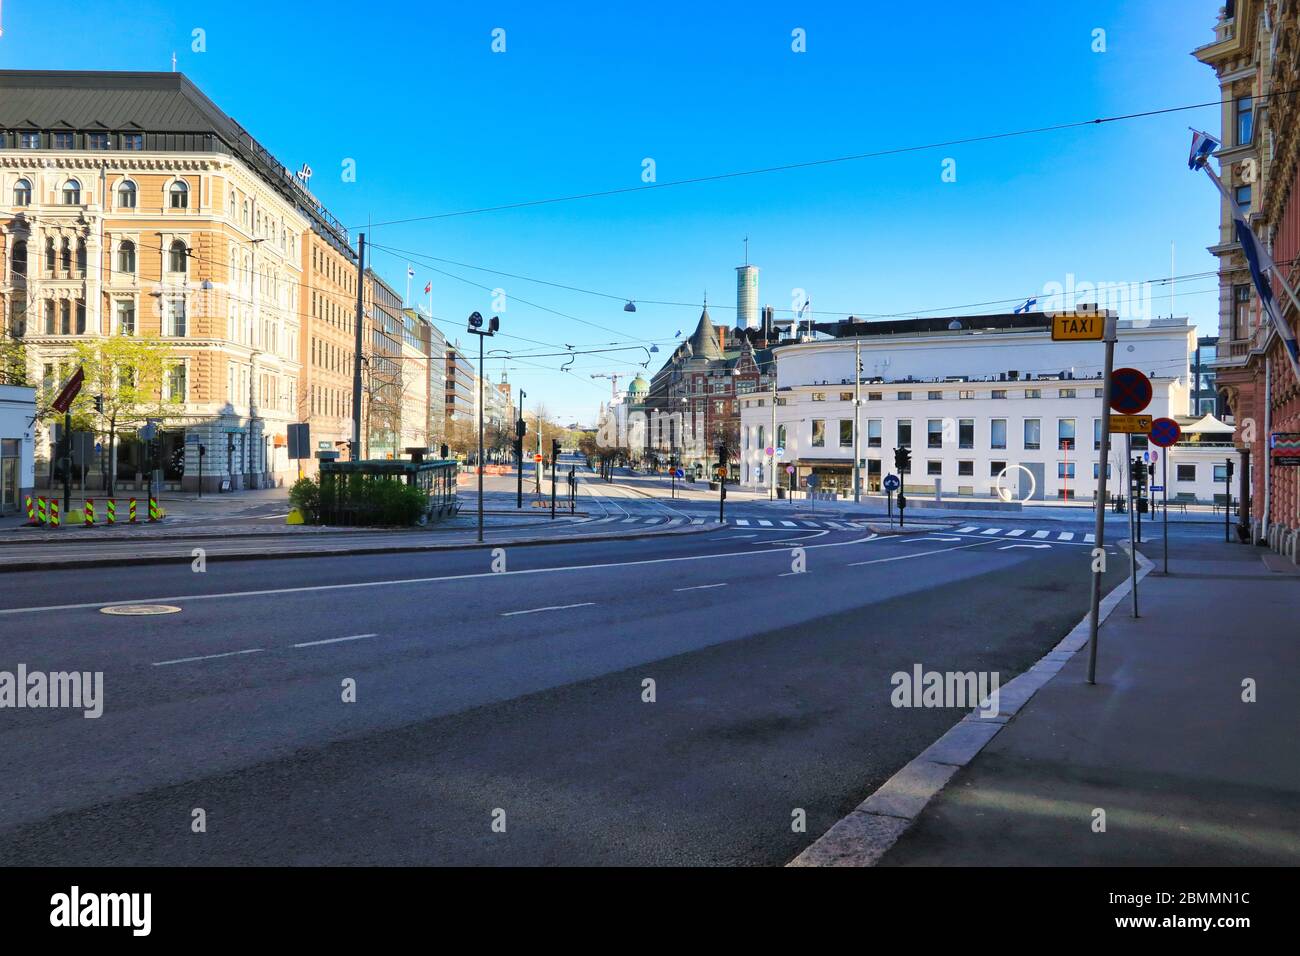 Helsinki, Finnland. 10. Mai 2020, Muttertag. Normalerweise sind die geschäftigen Erottaja und Mannerheimintie Street in Helsinki während der Coronavirus-Pandemie sehr ruhig. Stockfoto